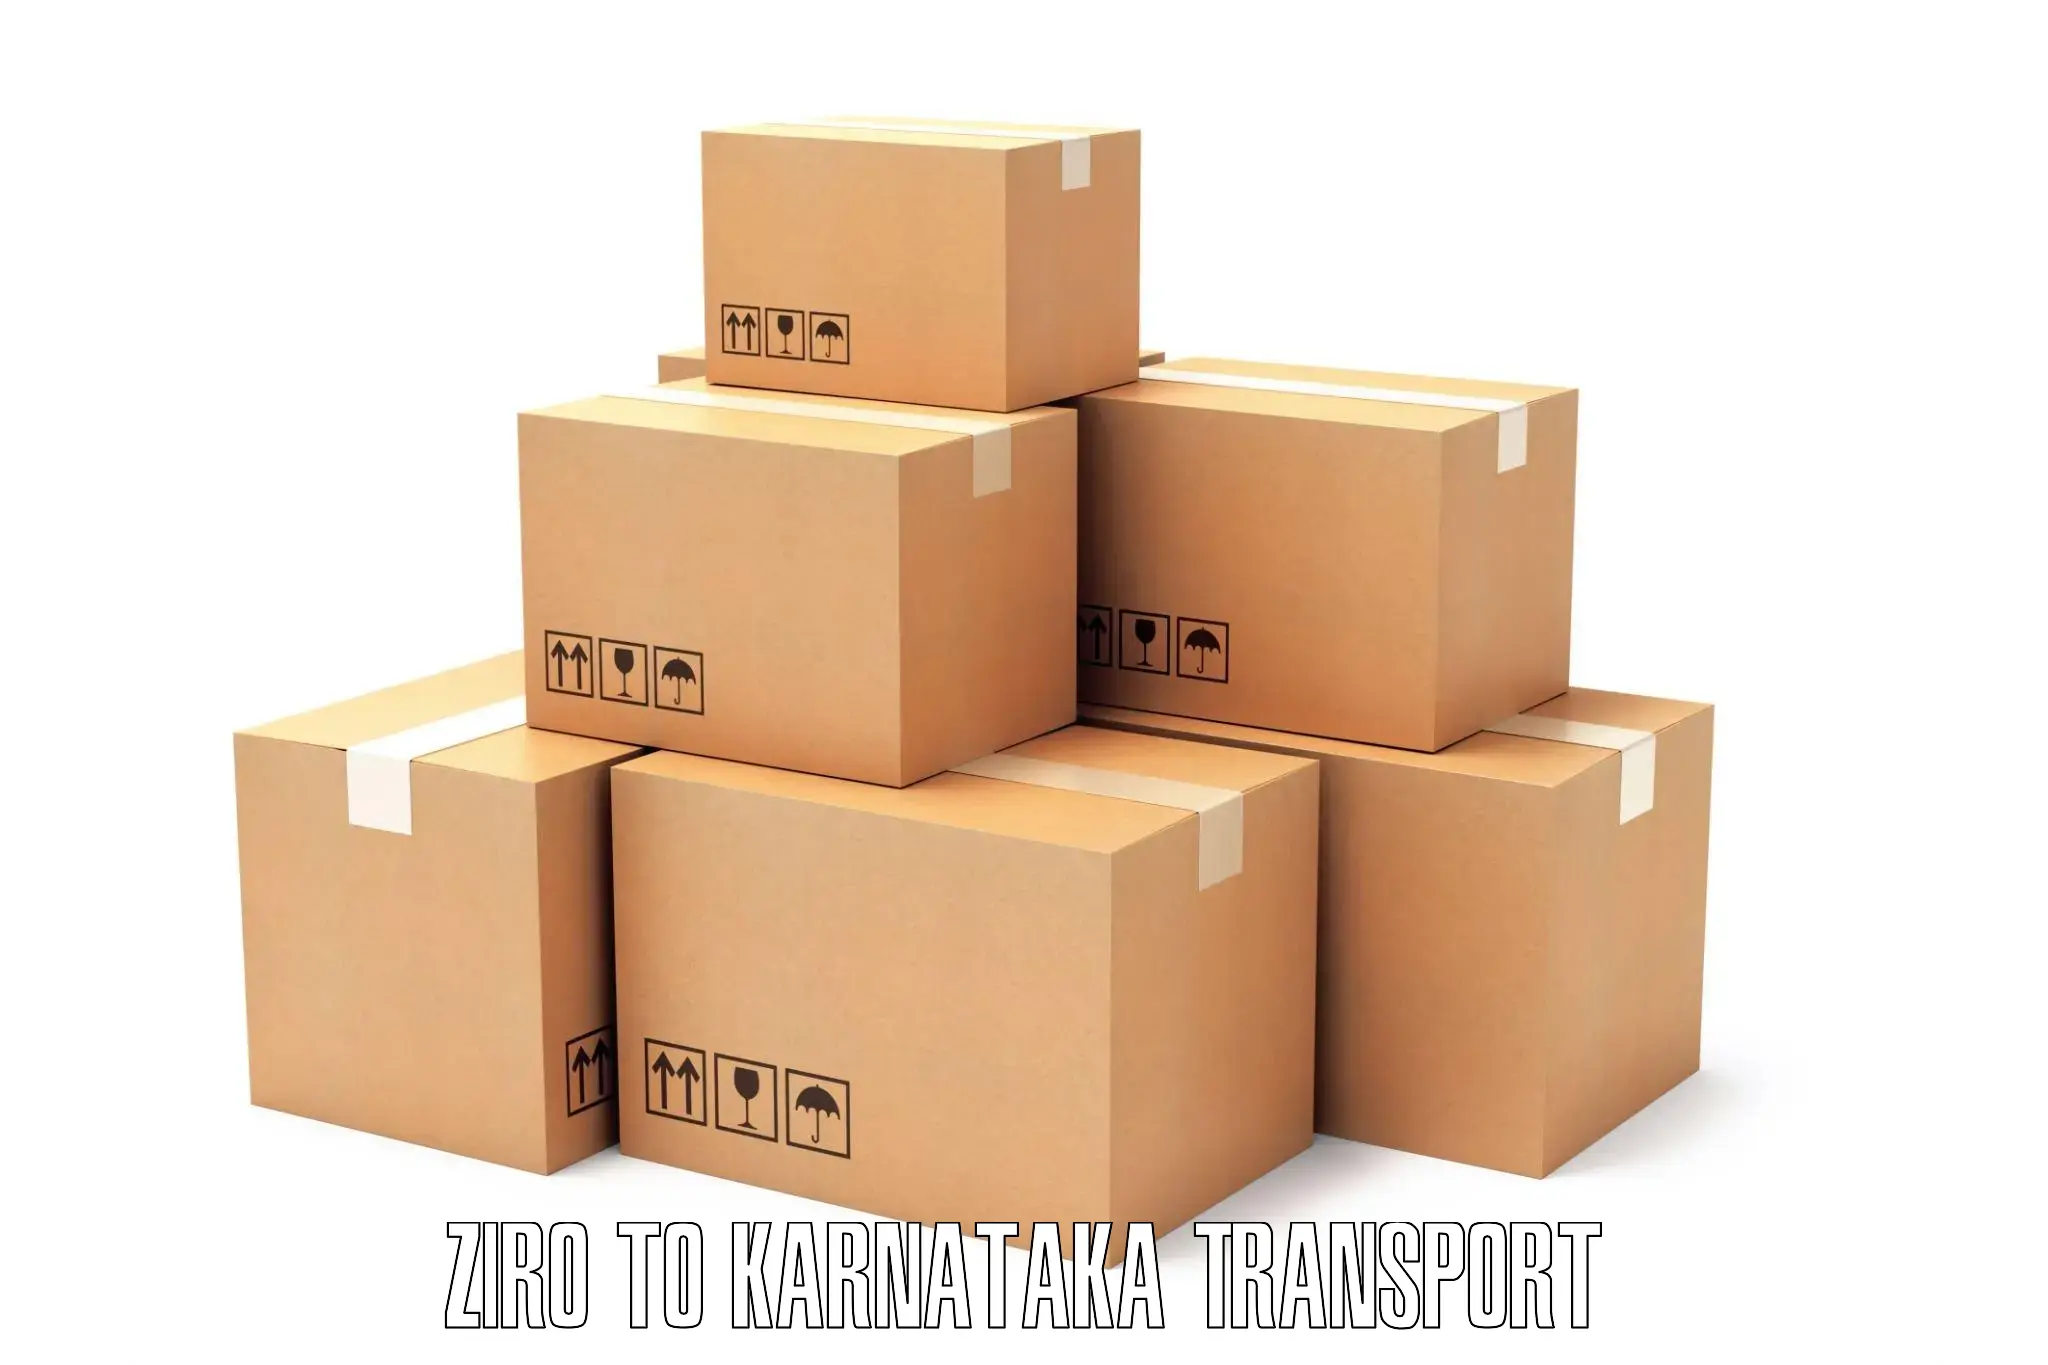 Luggage transport services Ziro to Mundgod